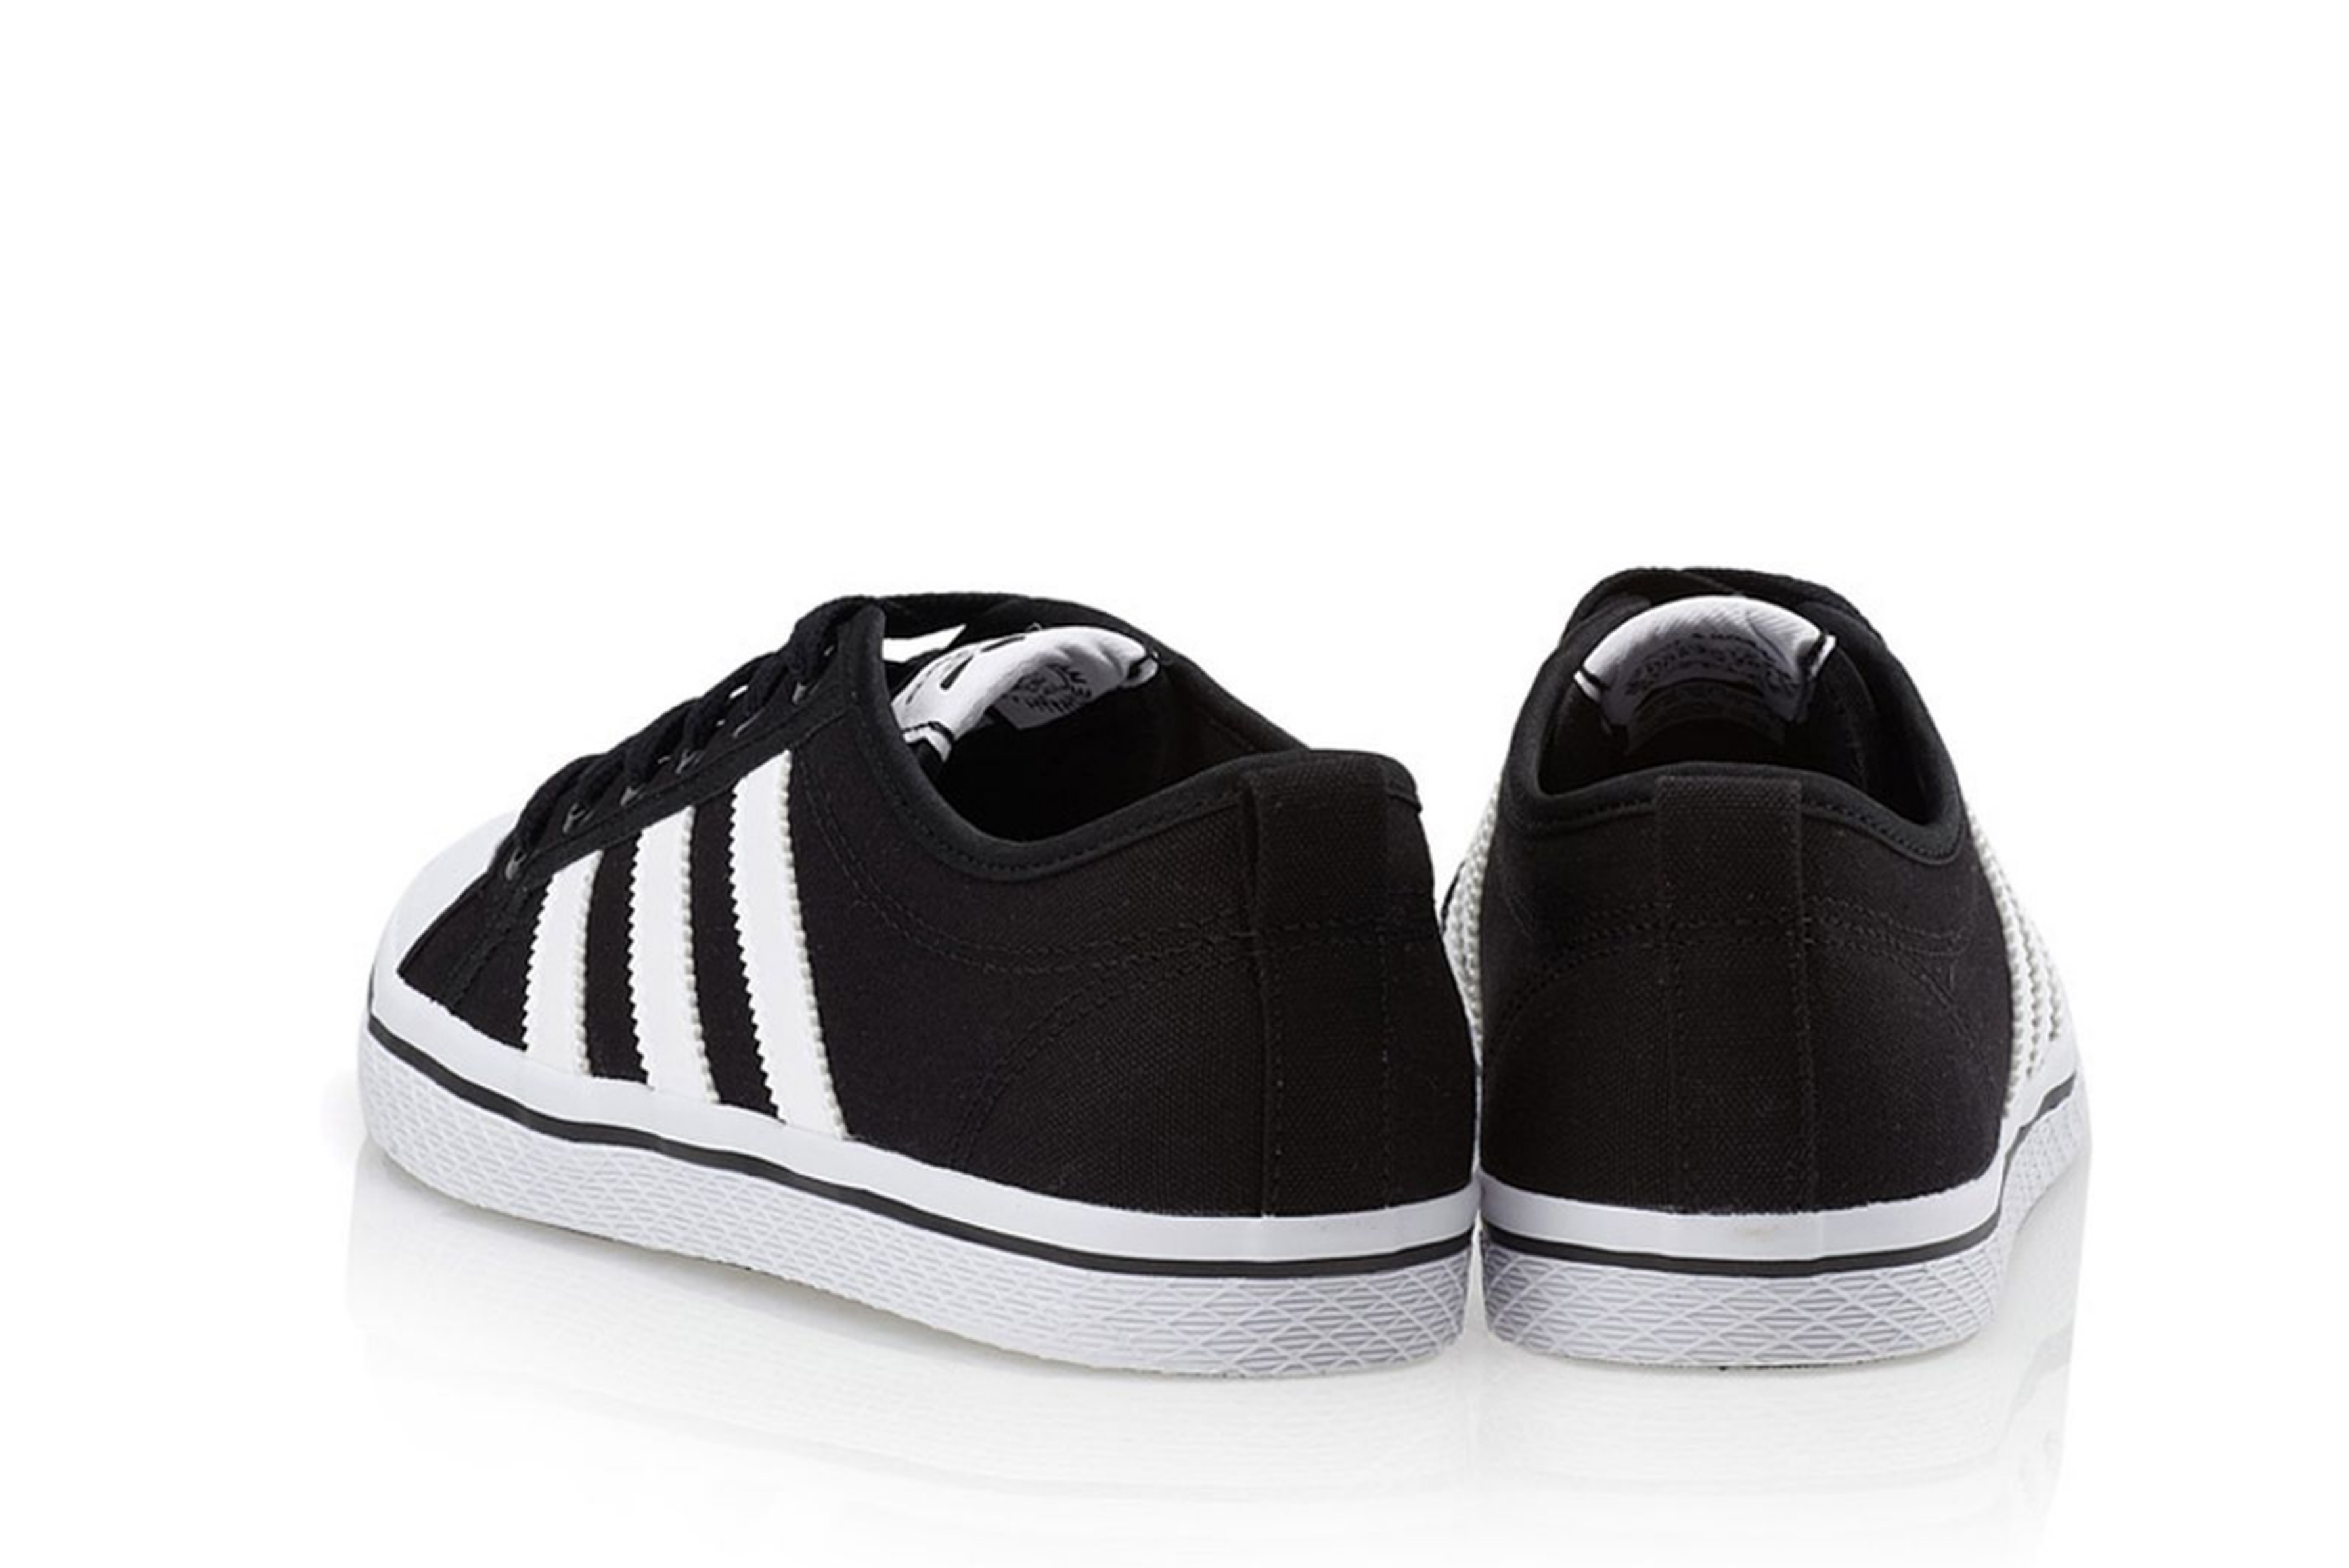 Eliminar Prefacio federación adidas originals Honey Stripes Low Sneakers Black/White/Black